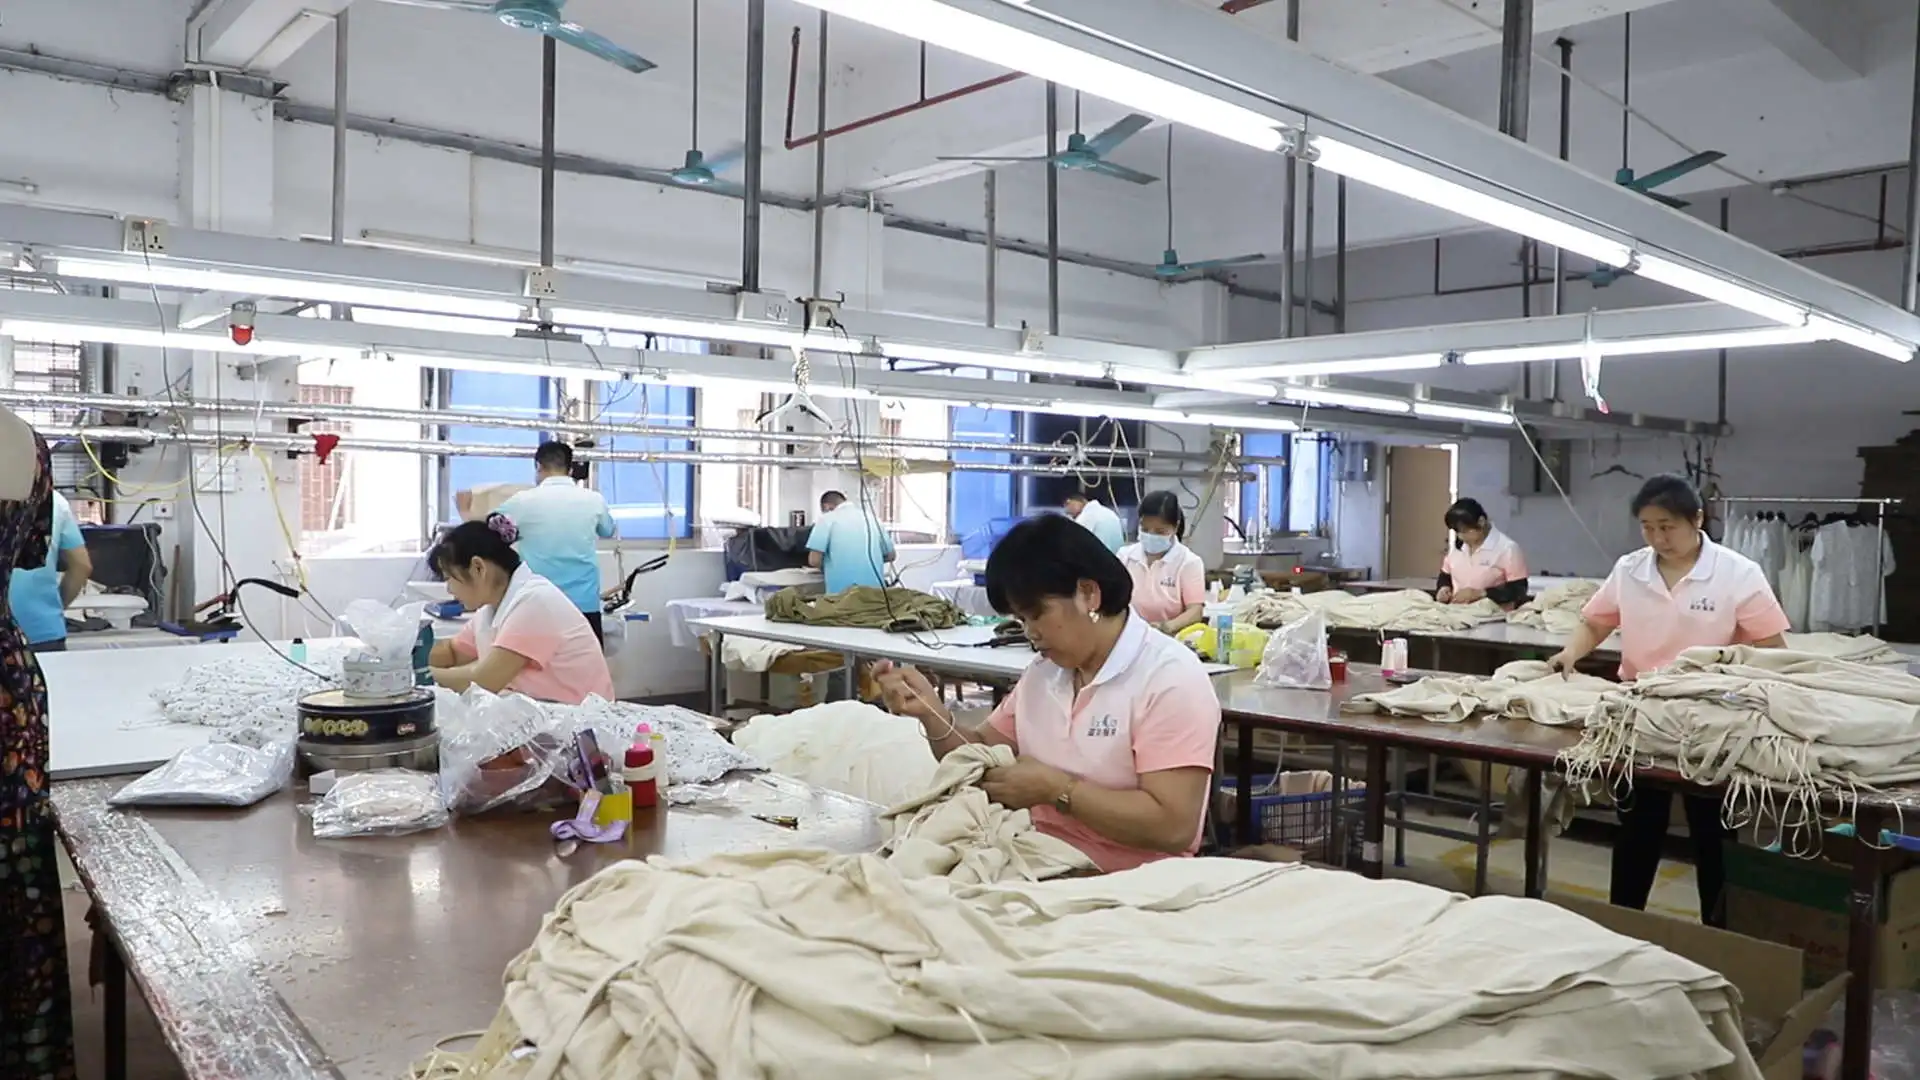 Lancai Women Dress Blouse Pants Apparel Design Services Clothing Custom Manufacture Factory